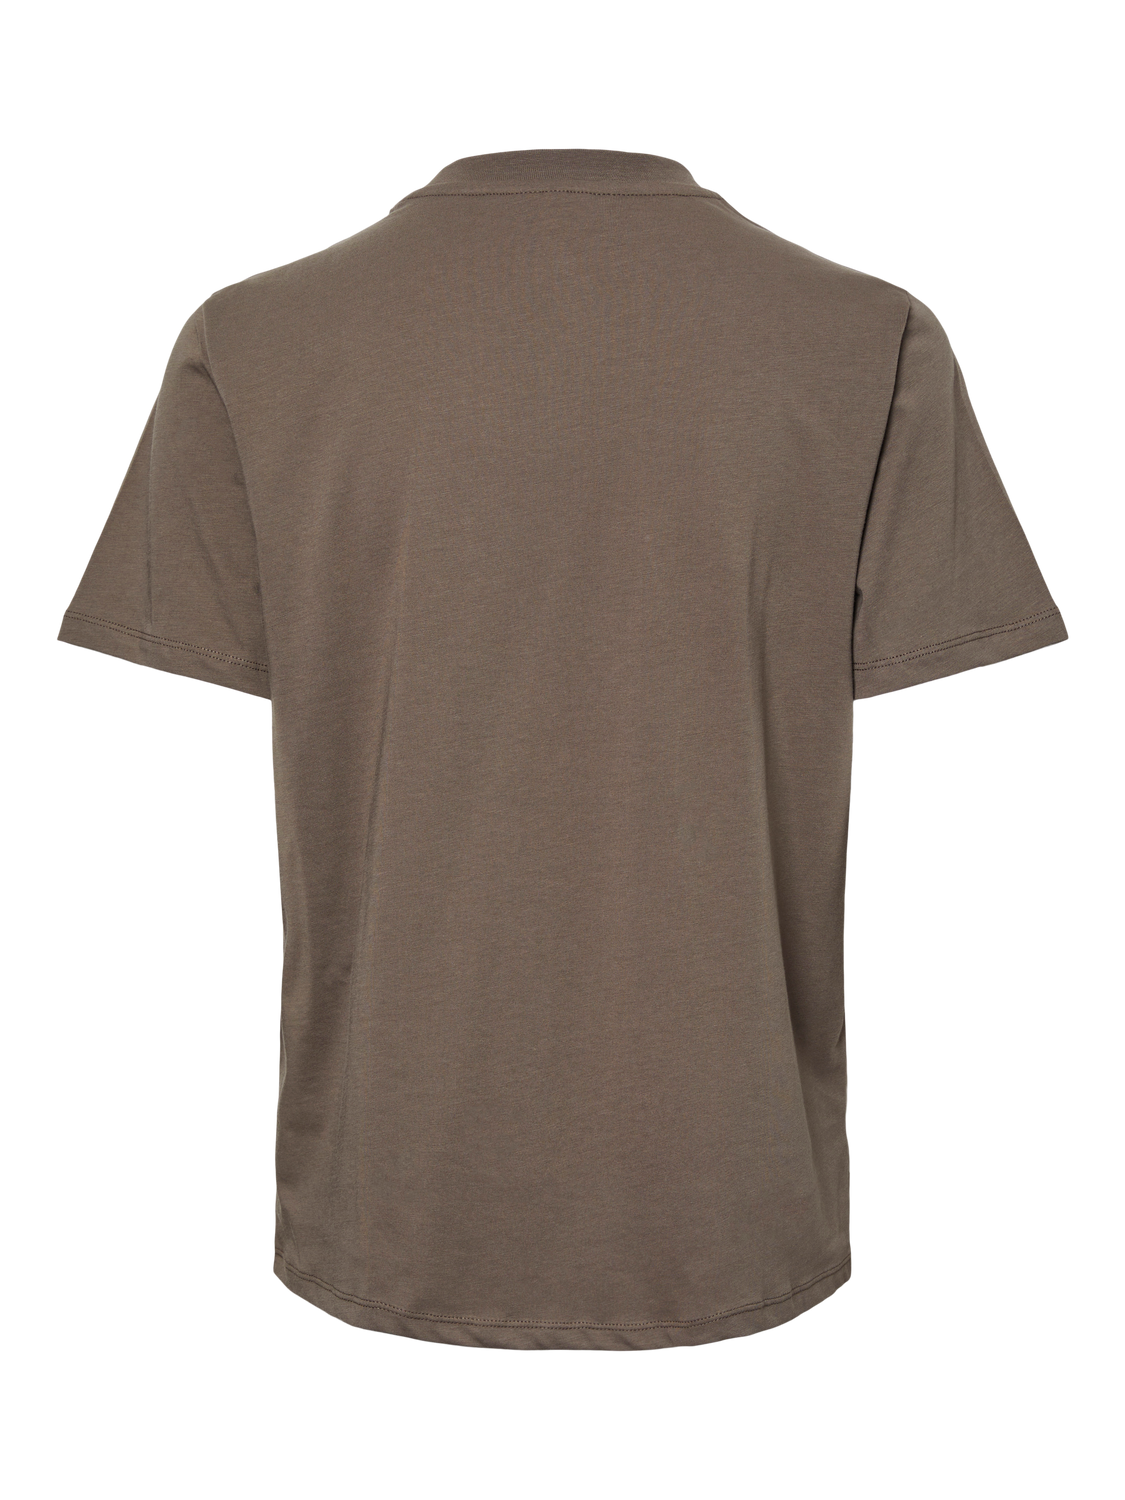 PCRIA T-Shirt - Morel